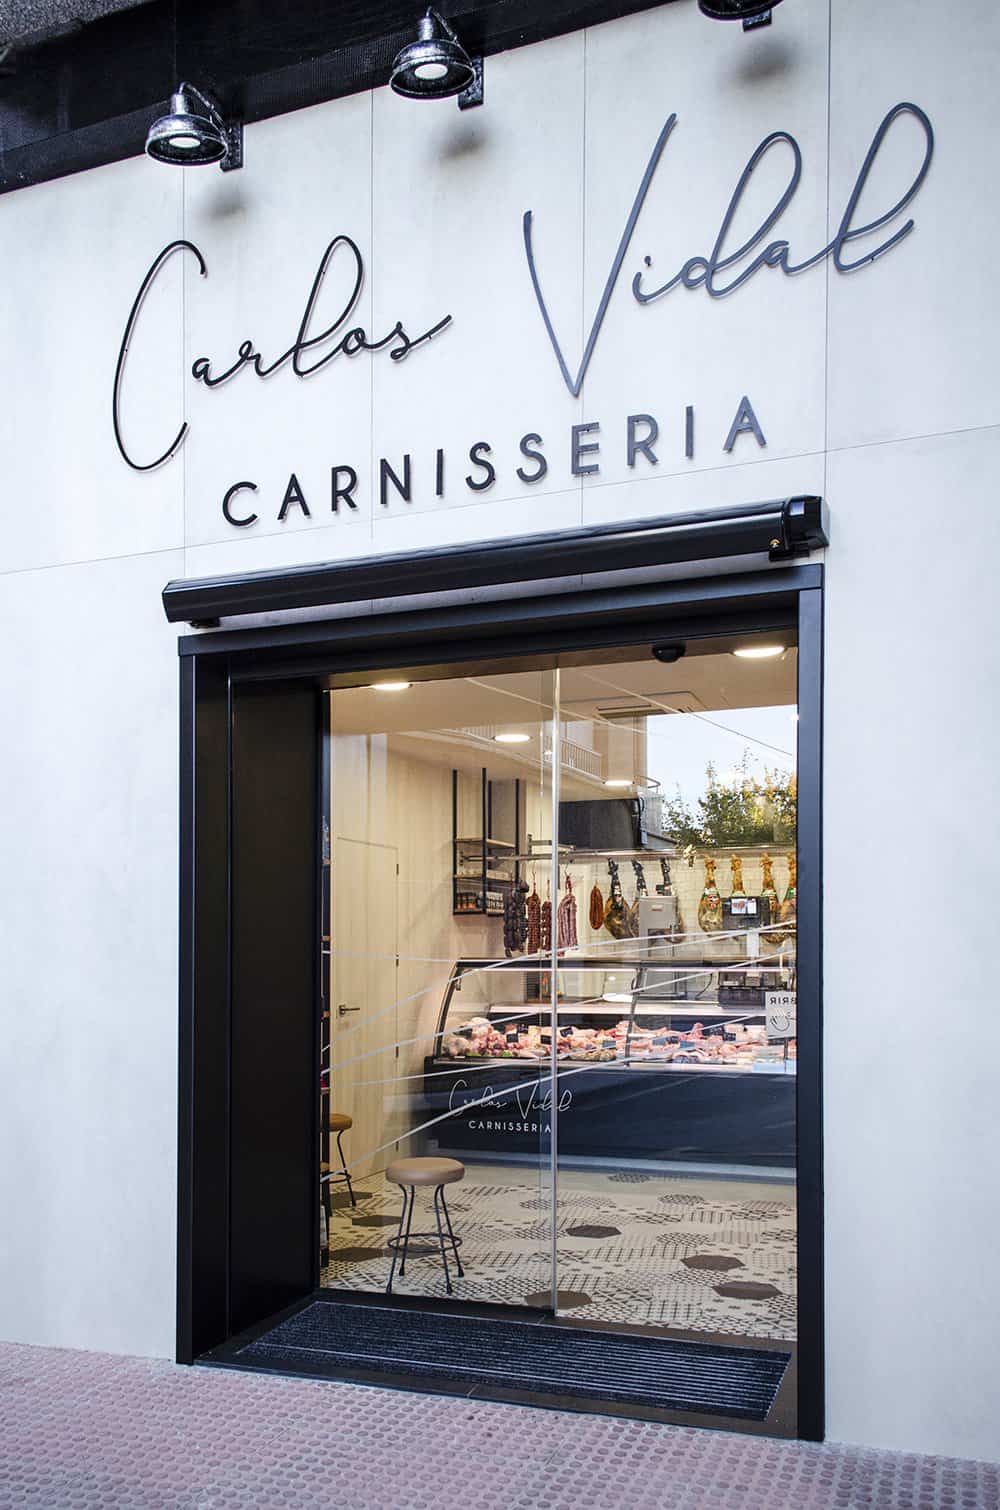 Imagen de la fachada de la carnicería Carlos Vidal después del trabajo de imagen corporativa diseñada por IDEADE